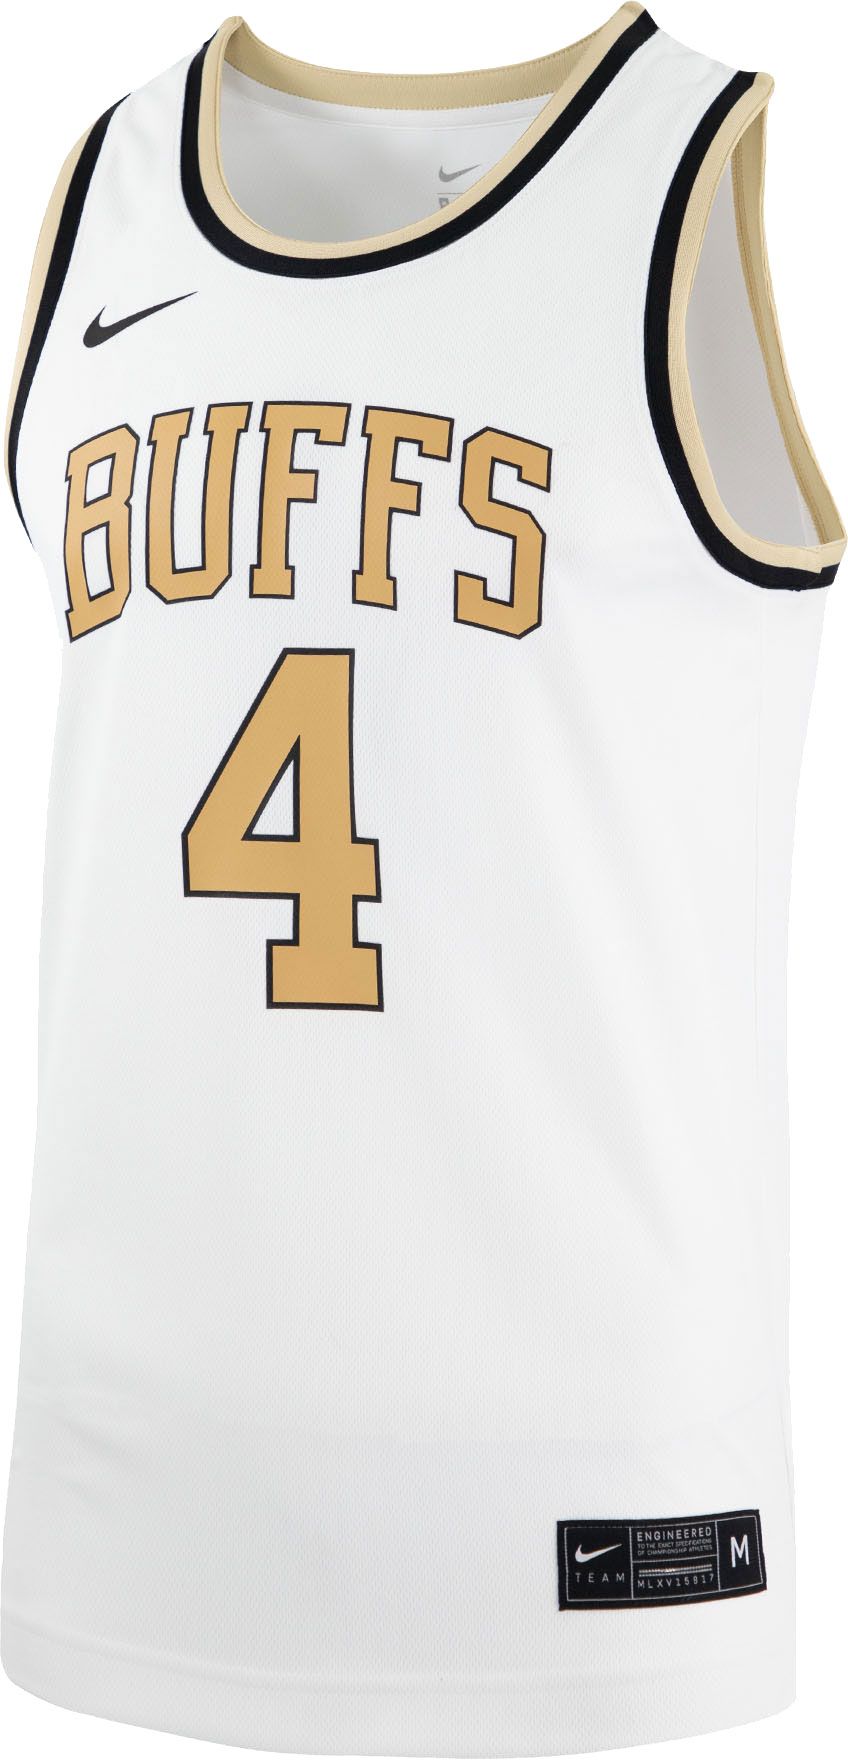 Buffaloes basketball jersey